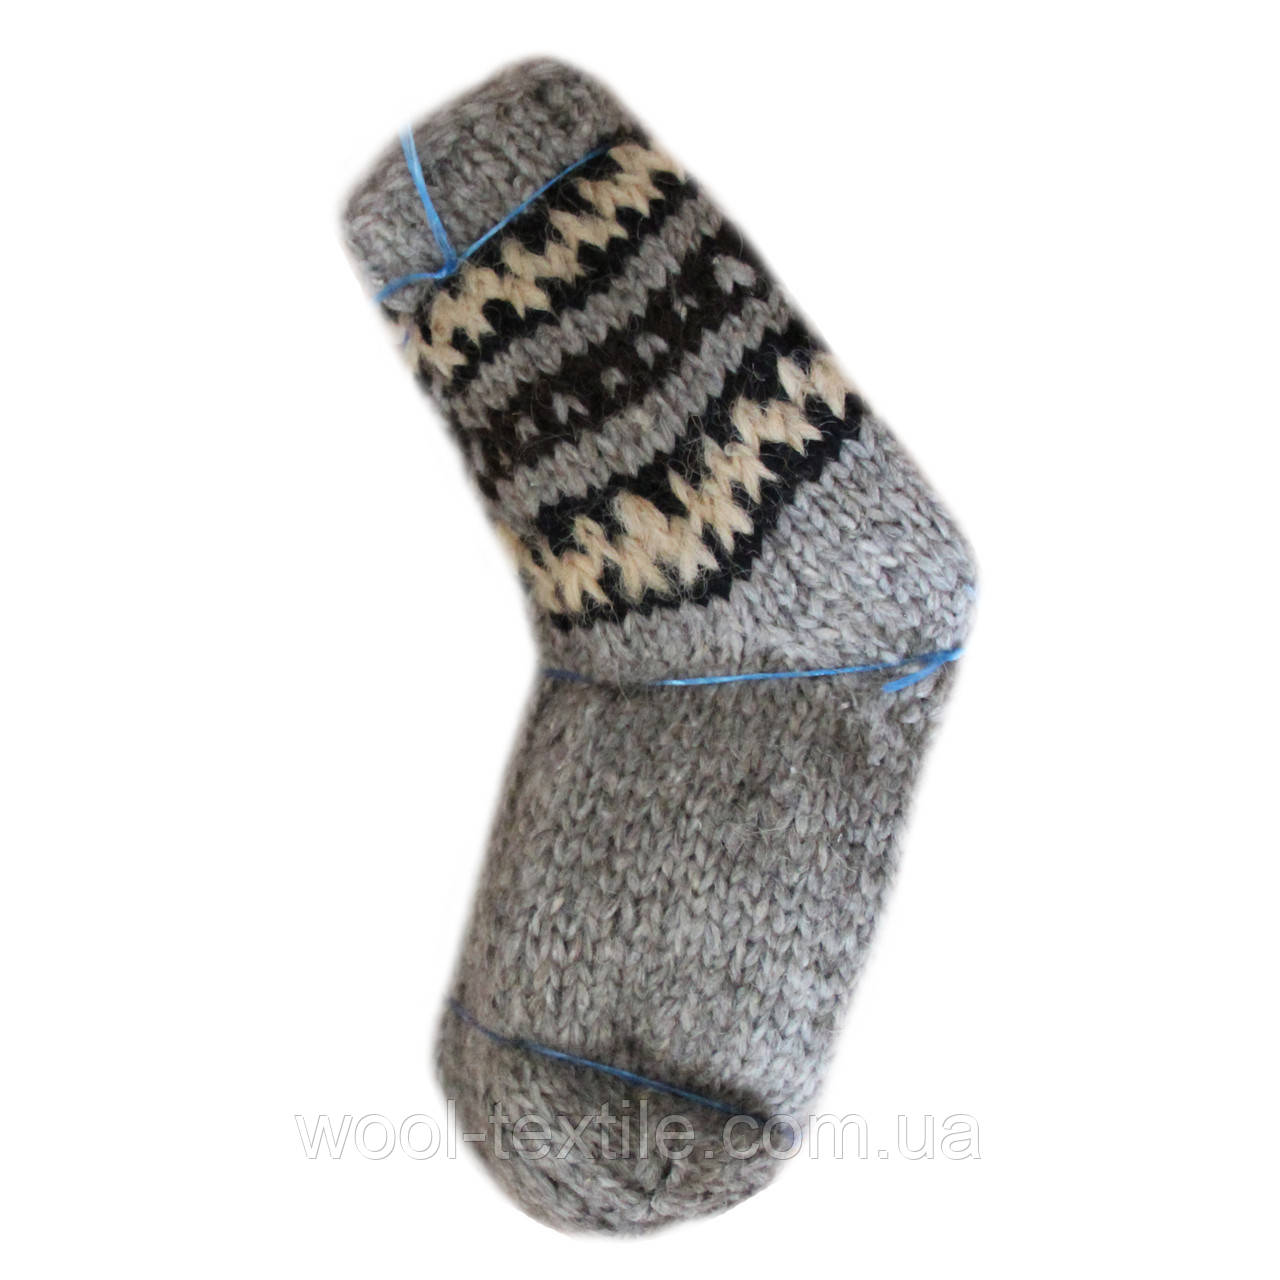 Шкарпетки ручного в'язання з овечої вовни, всі розміри